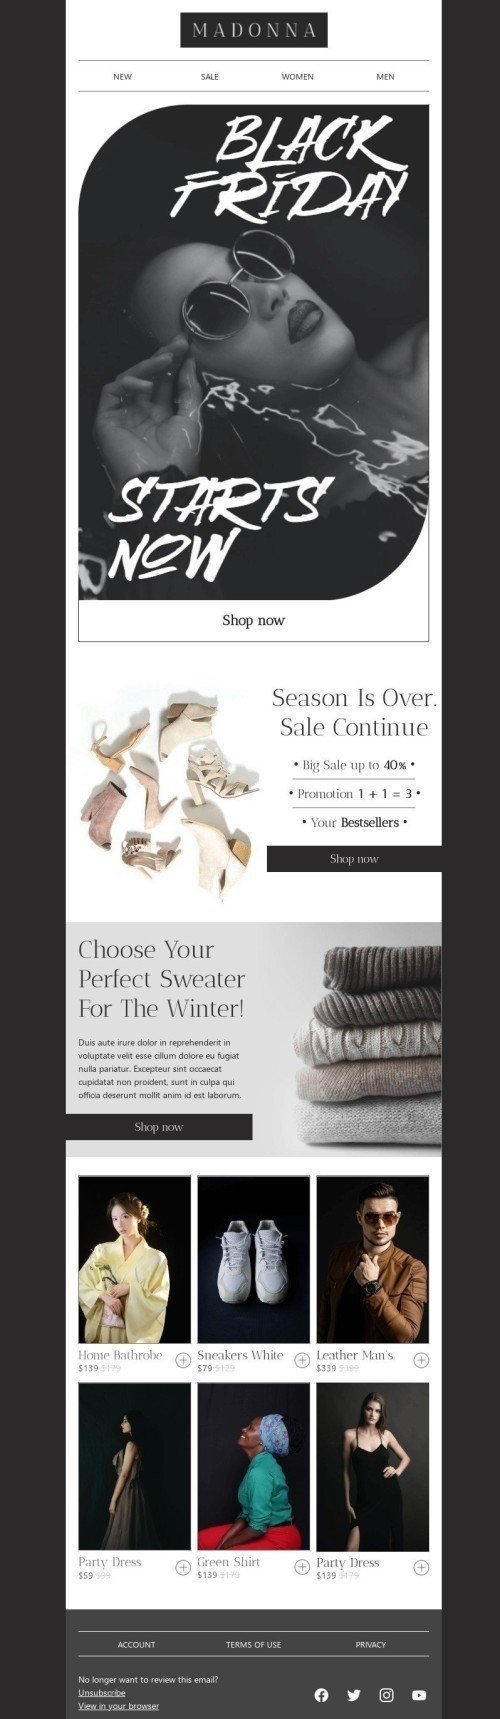 Black Friday E-Mail-Vorlage «Wählen Sie Ihren perfekten Pullover» für Mode-Branche Ansicht auf Mobilgeräten